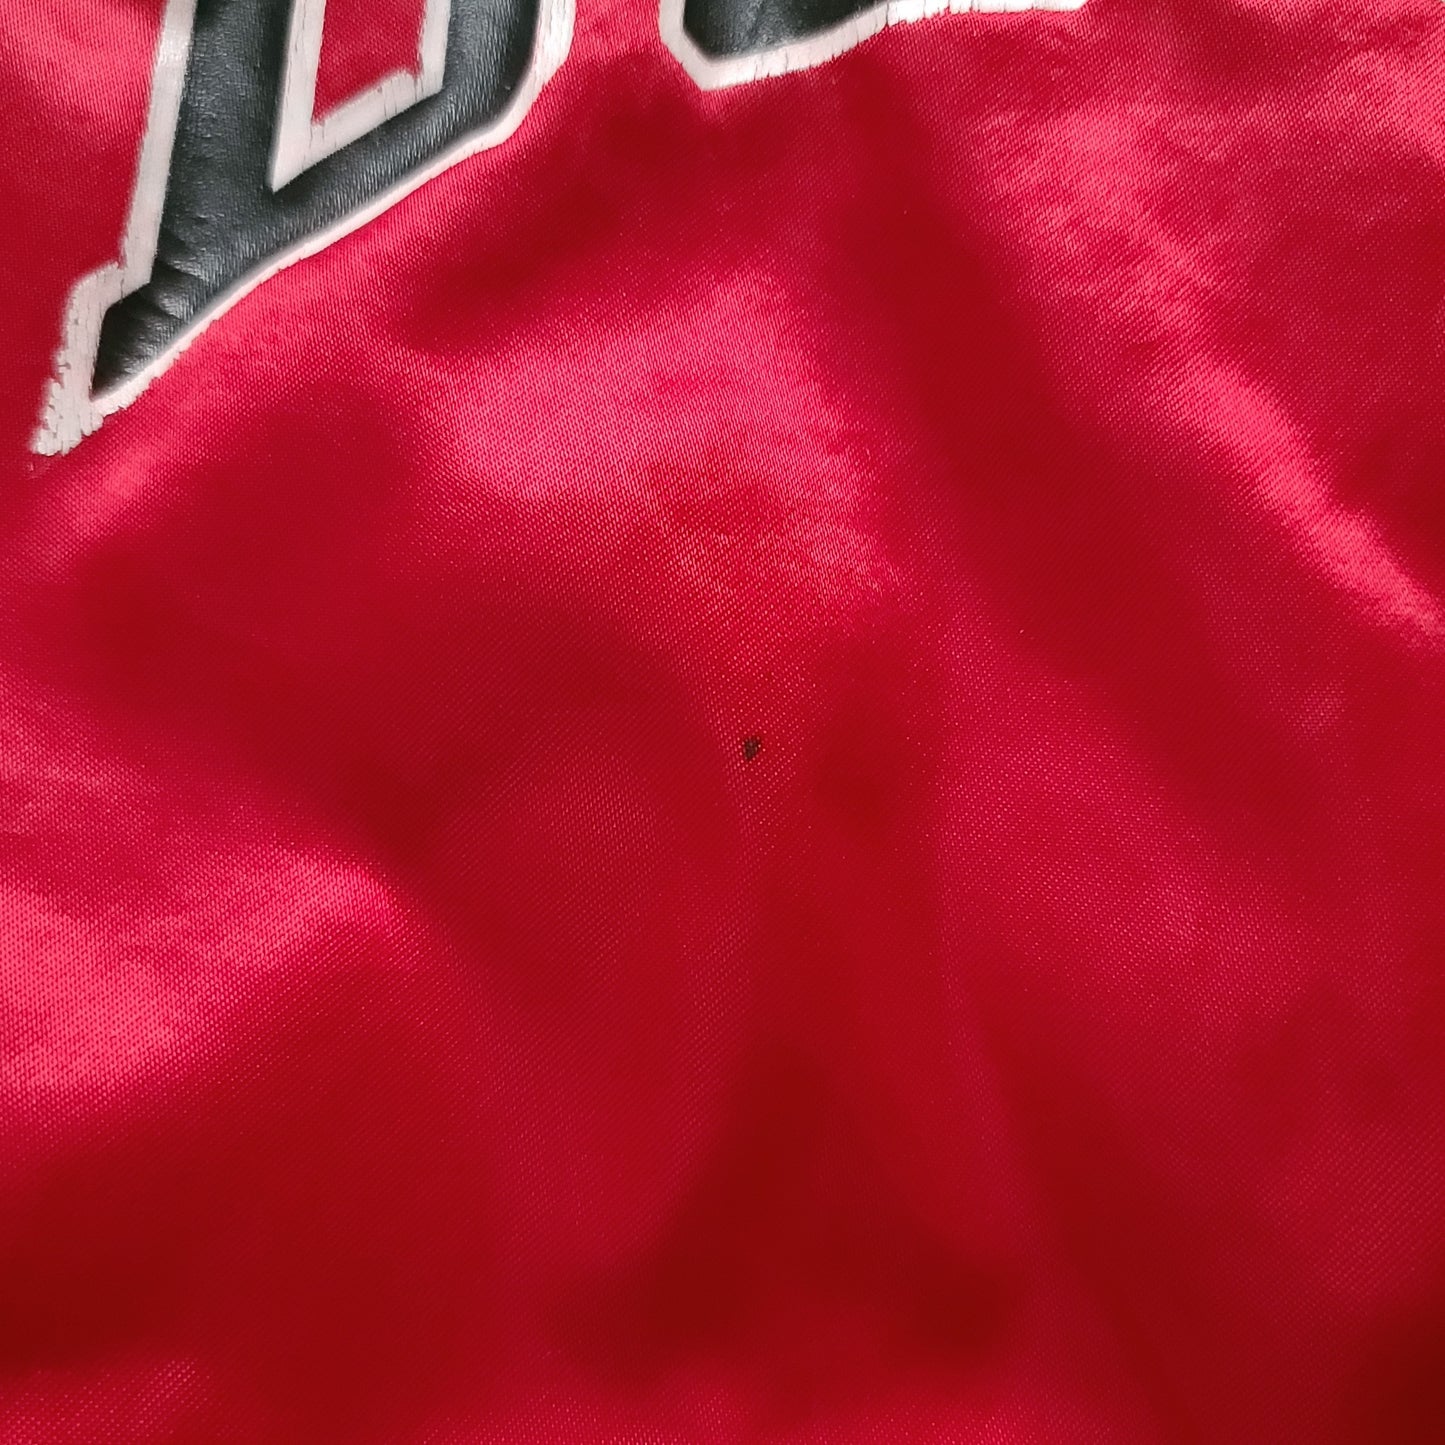 Vintage Chicago Bulls Red Chalk Line Satin Jacket